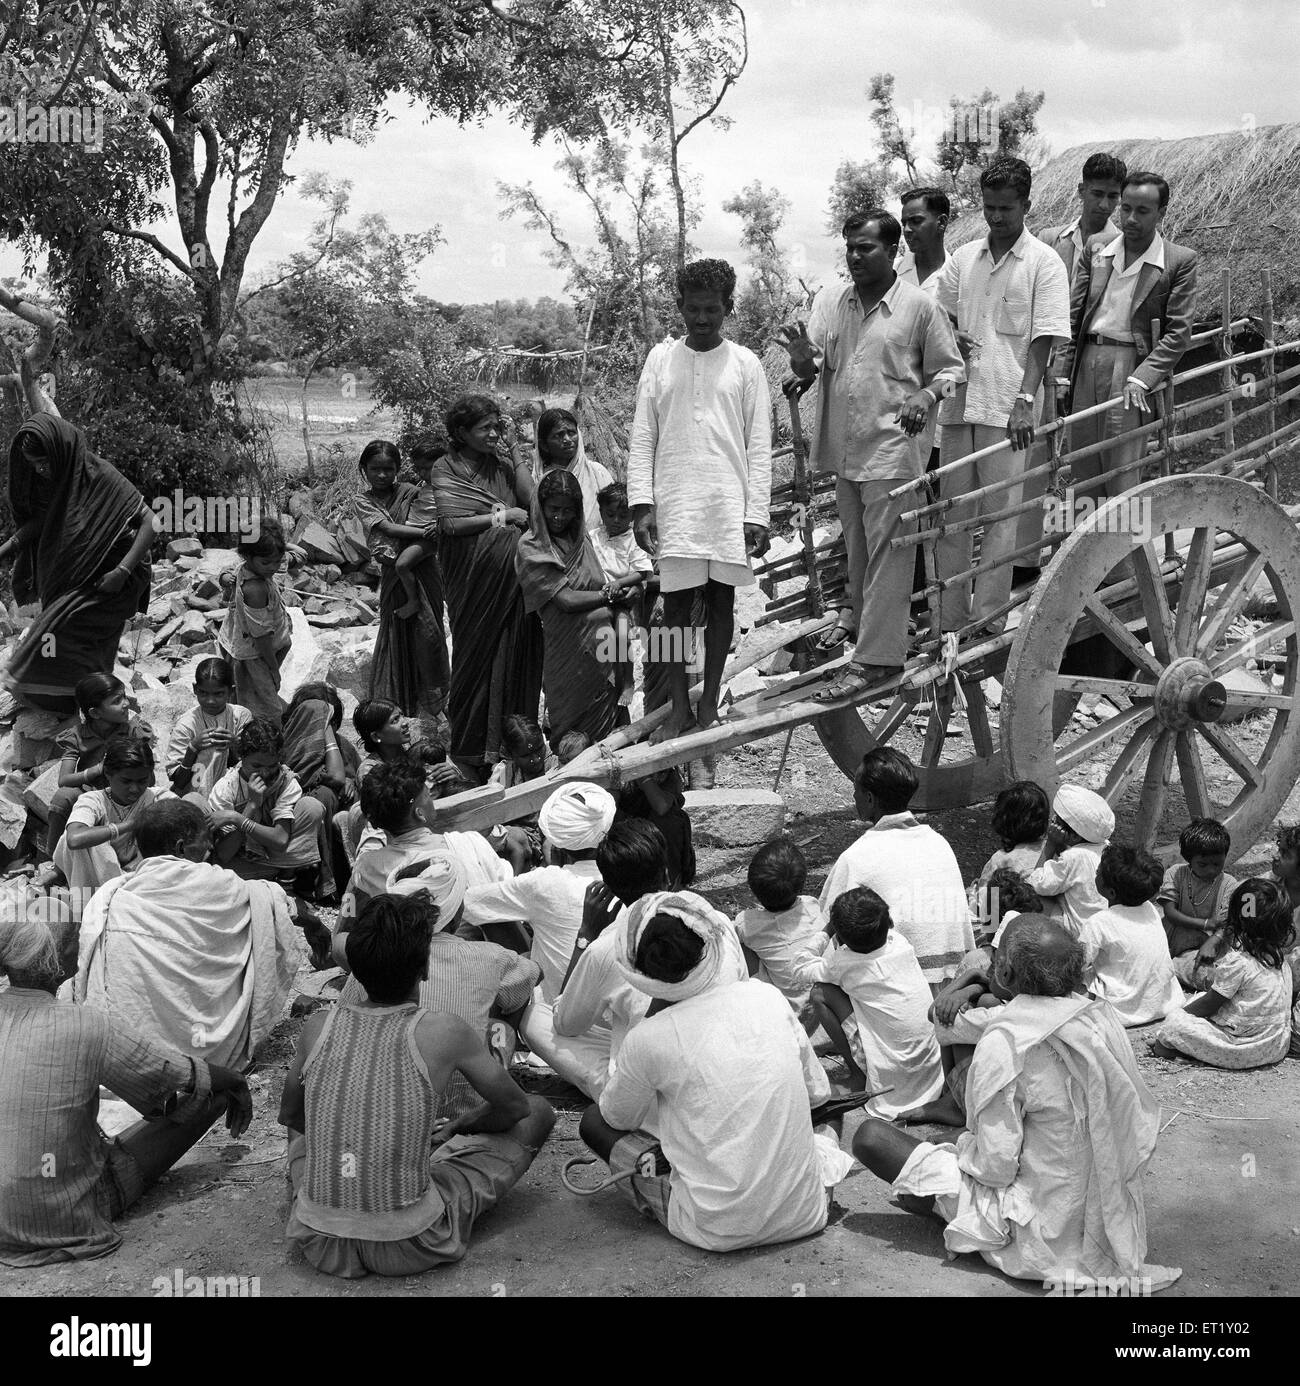 Formación de interacción en grupo de jóvenes rurales ; Nanjangud cerca de Mysore ; Karnataka ; India ; Asia ; Asia ; Asia ; Indio ; foto de la vieja vendimia de 1900s Foto de stock